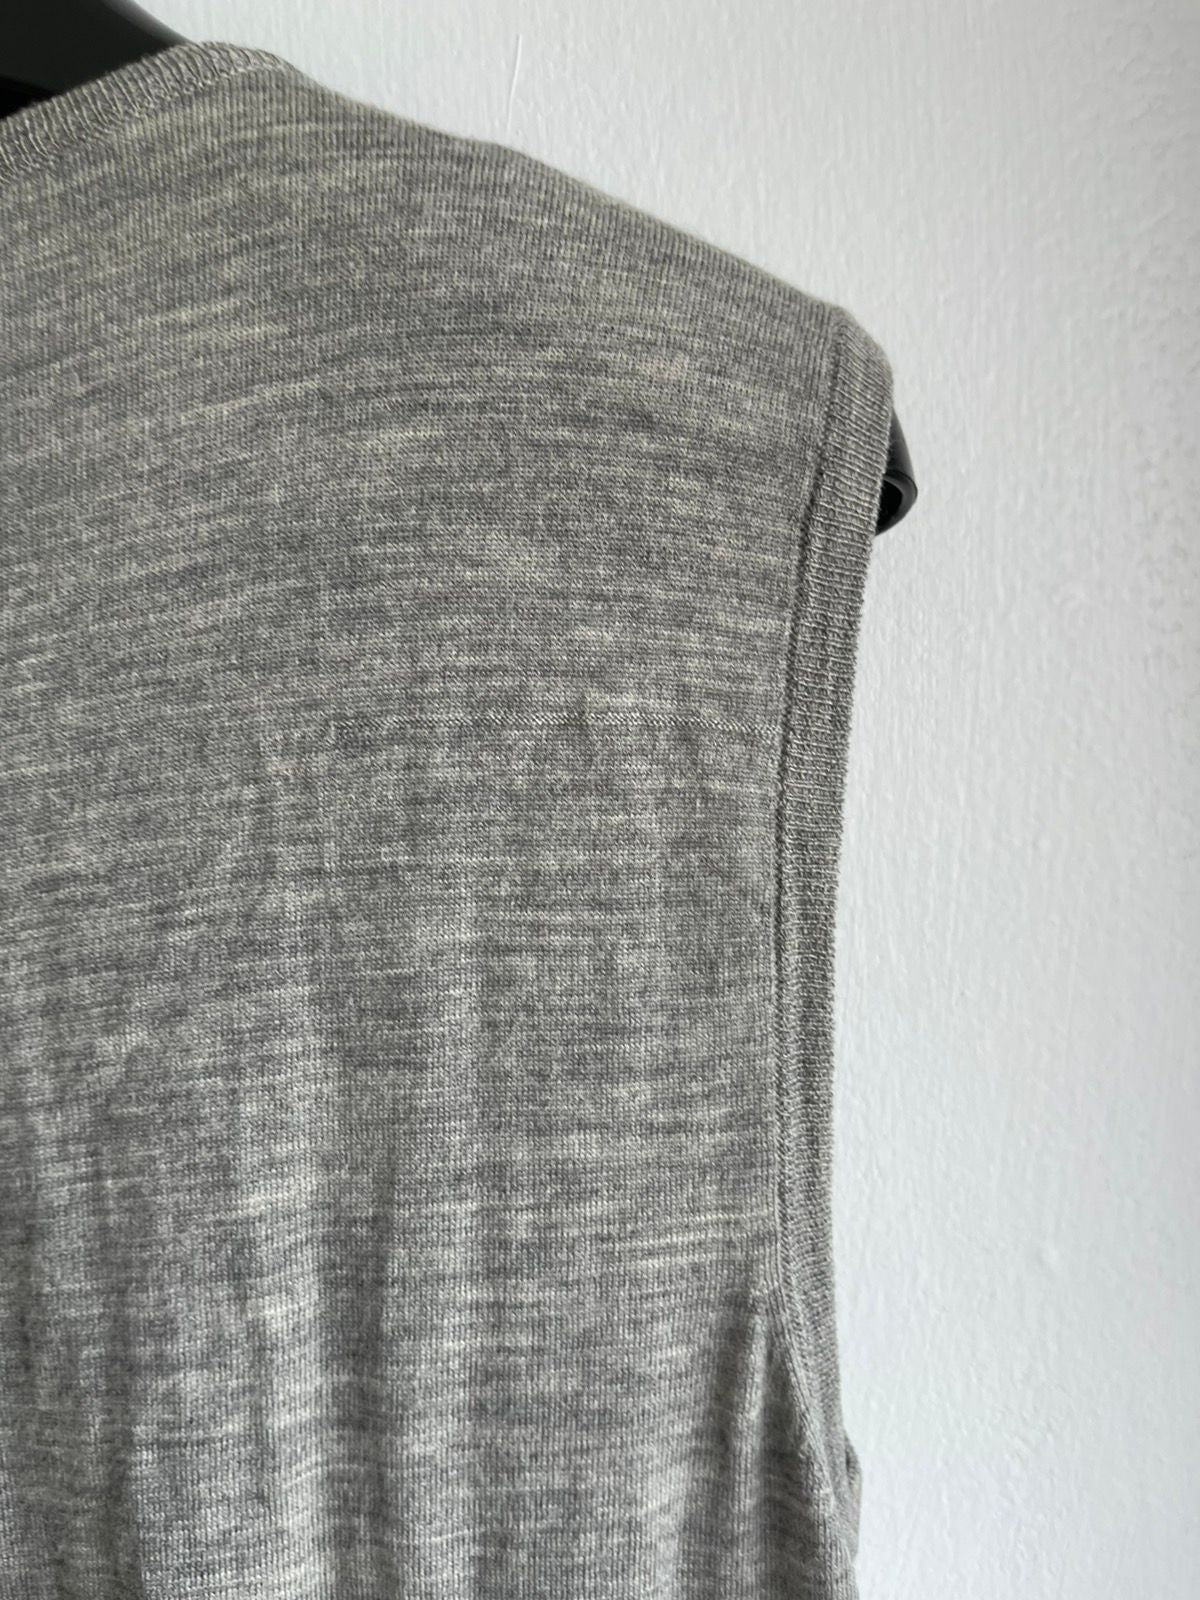 Dior Homme 05 Grey Grunge London Knit Vest